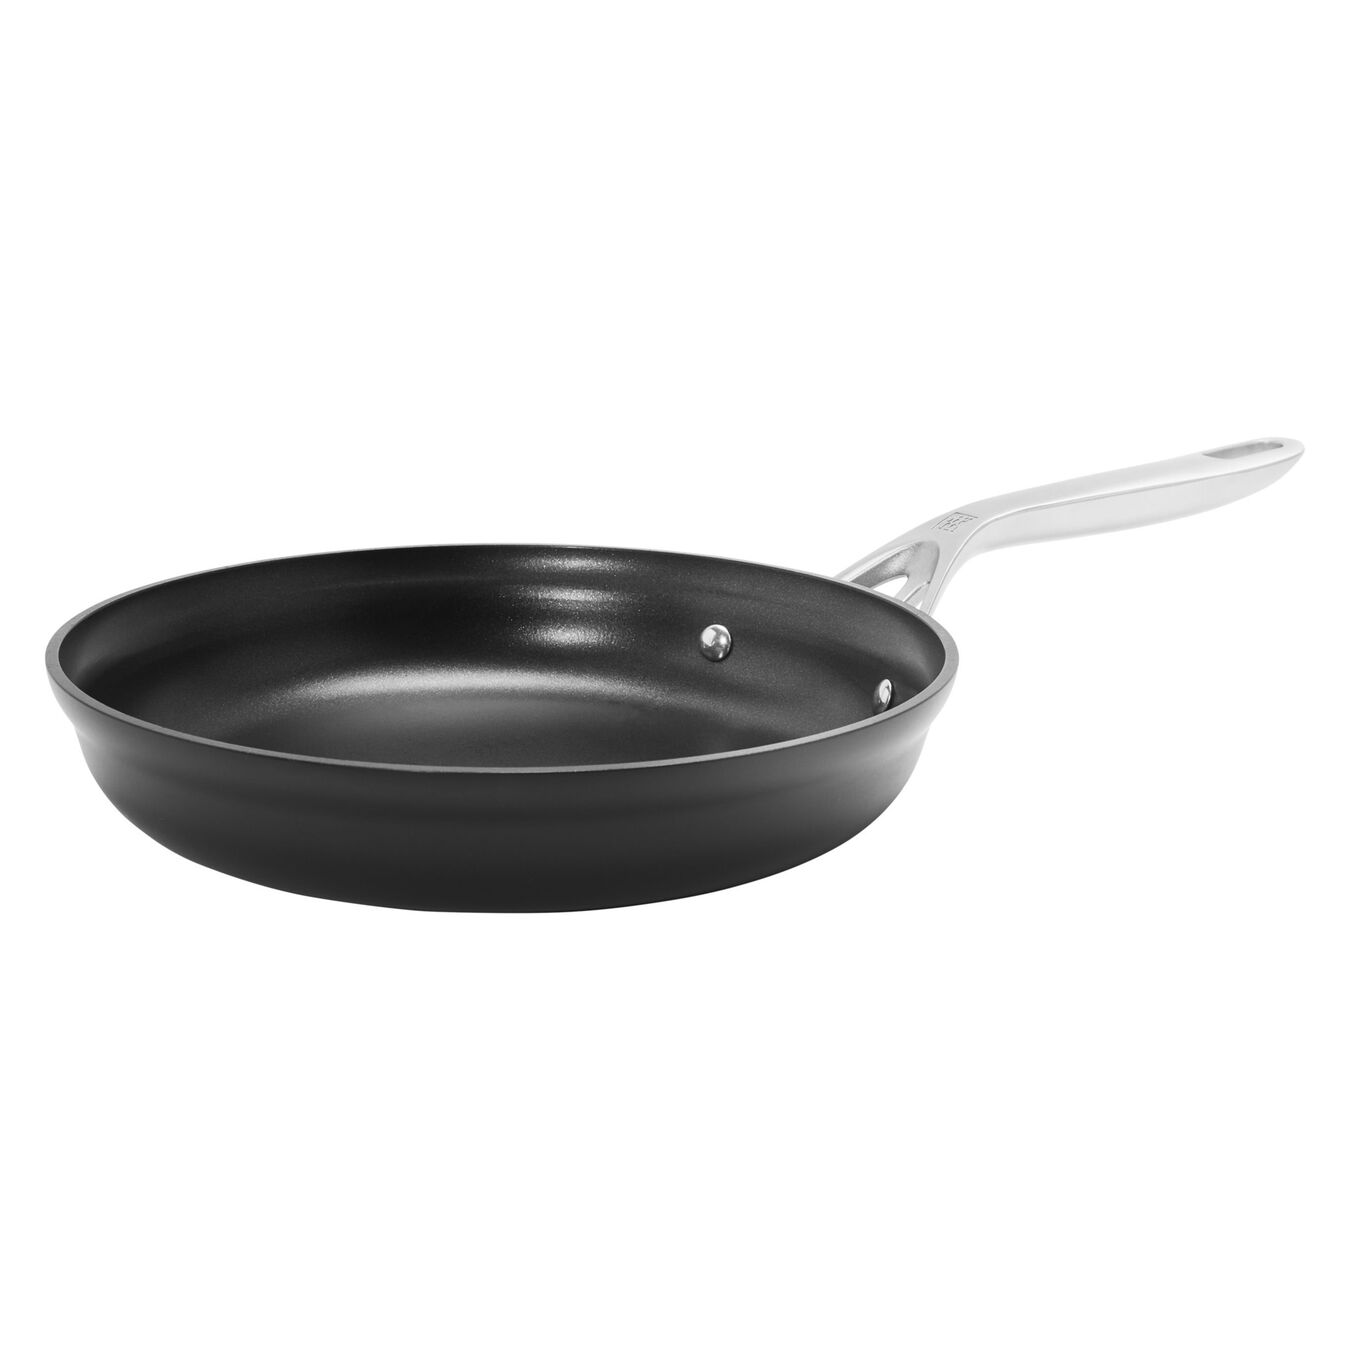 30 cm / 12 inch aluminium Frying pan,,large 2